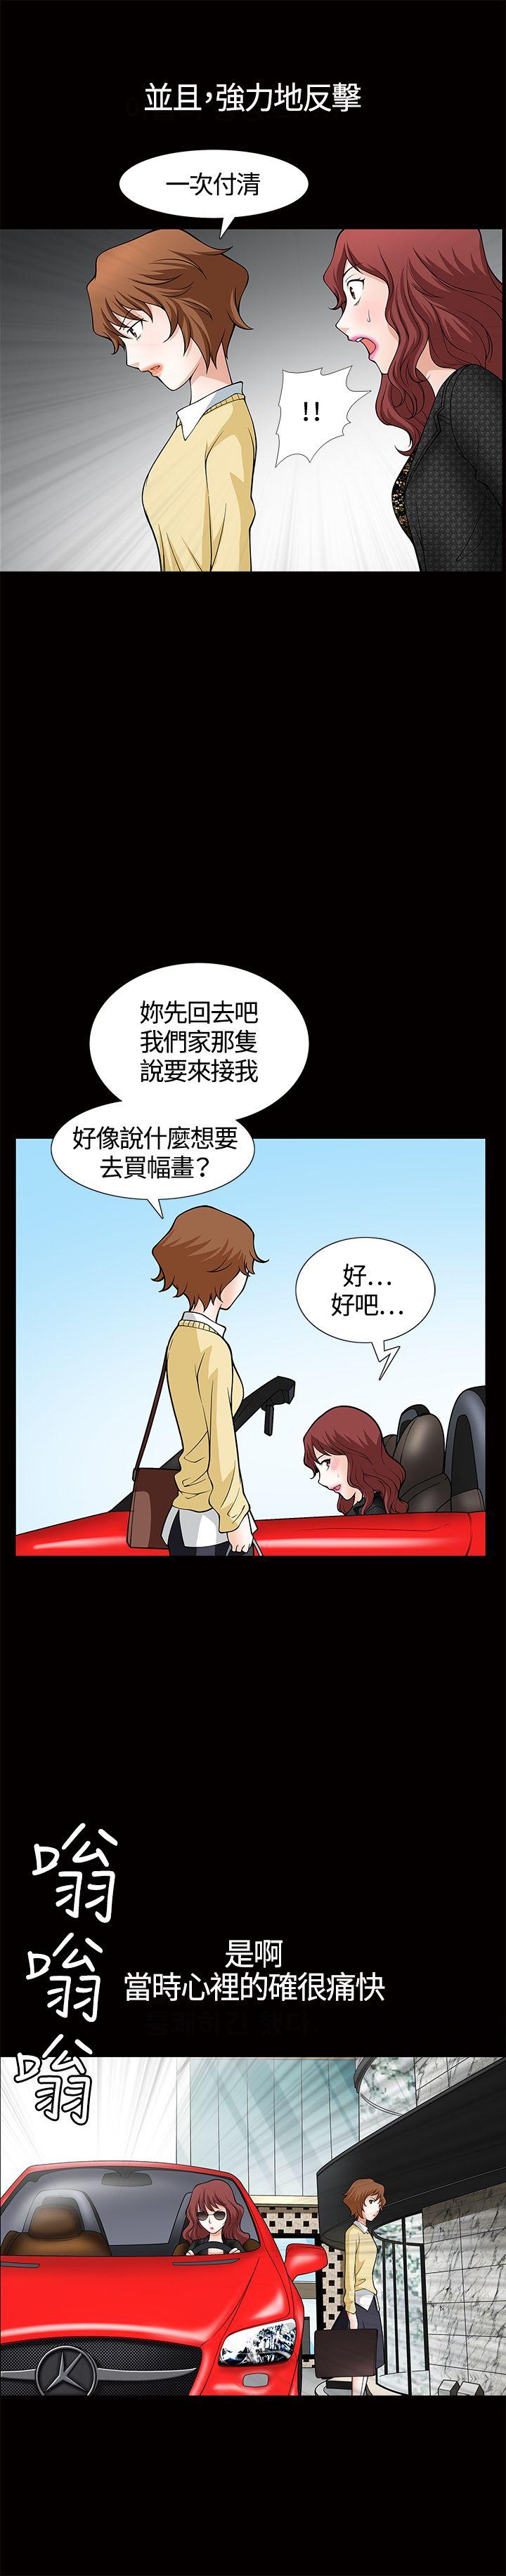 韩国污漫画 人妻性解放3:粗糙的手 第5话 24